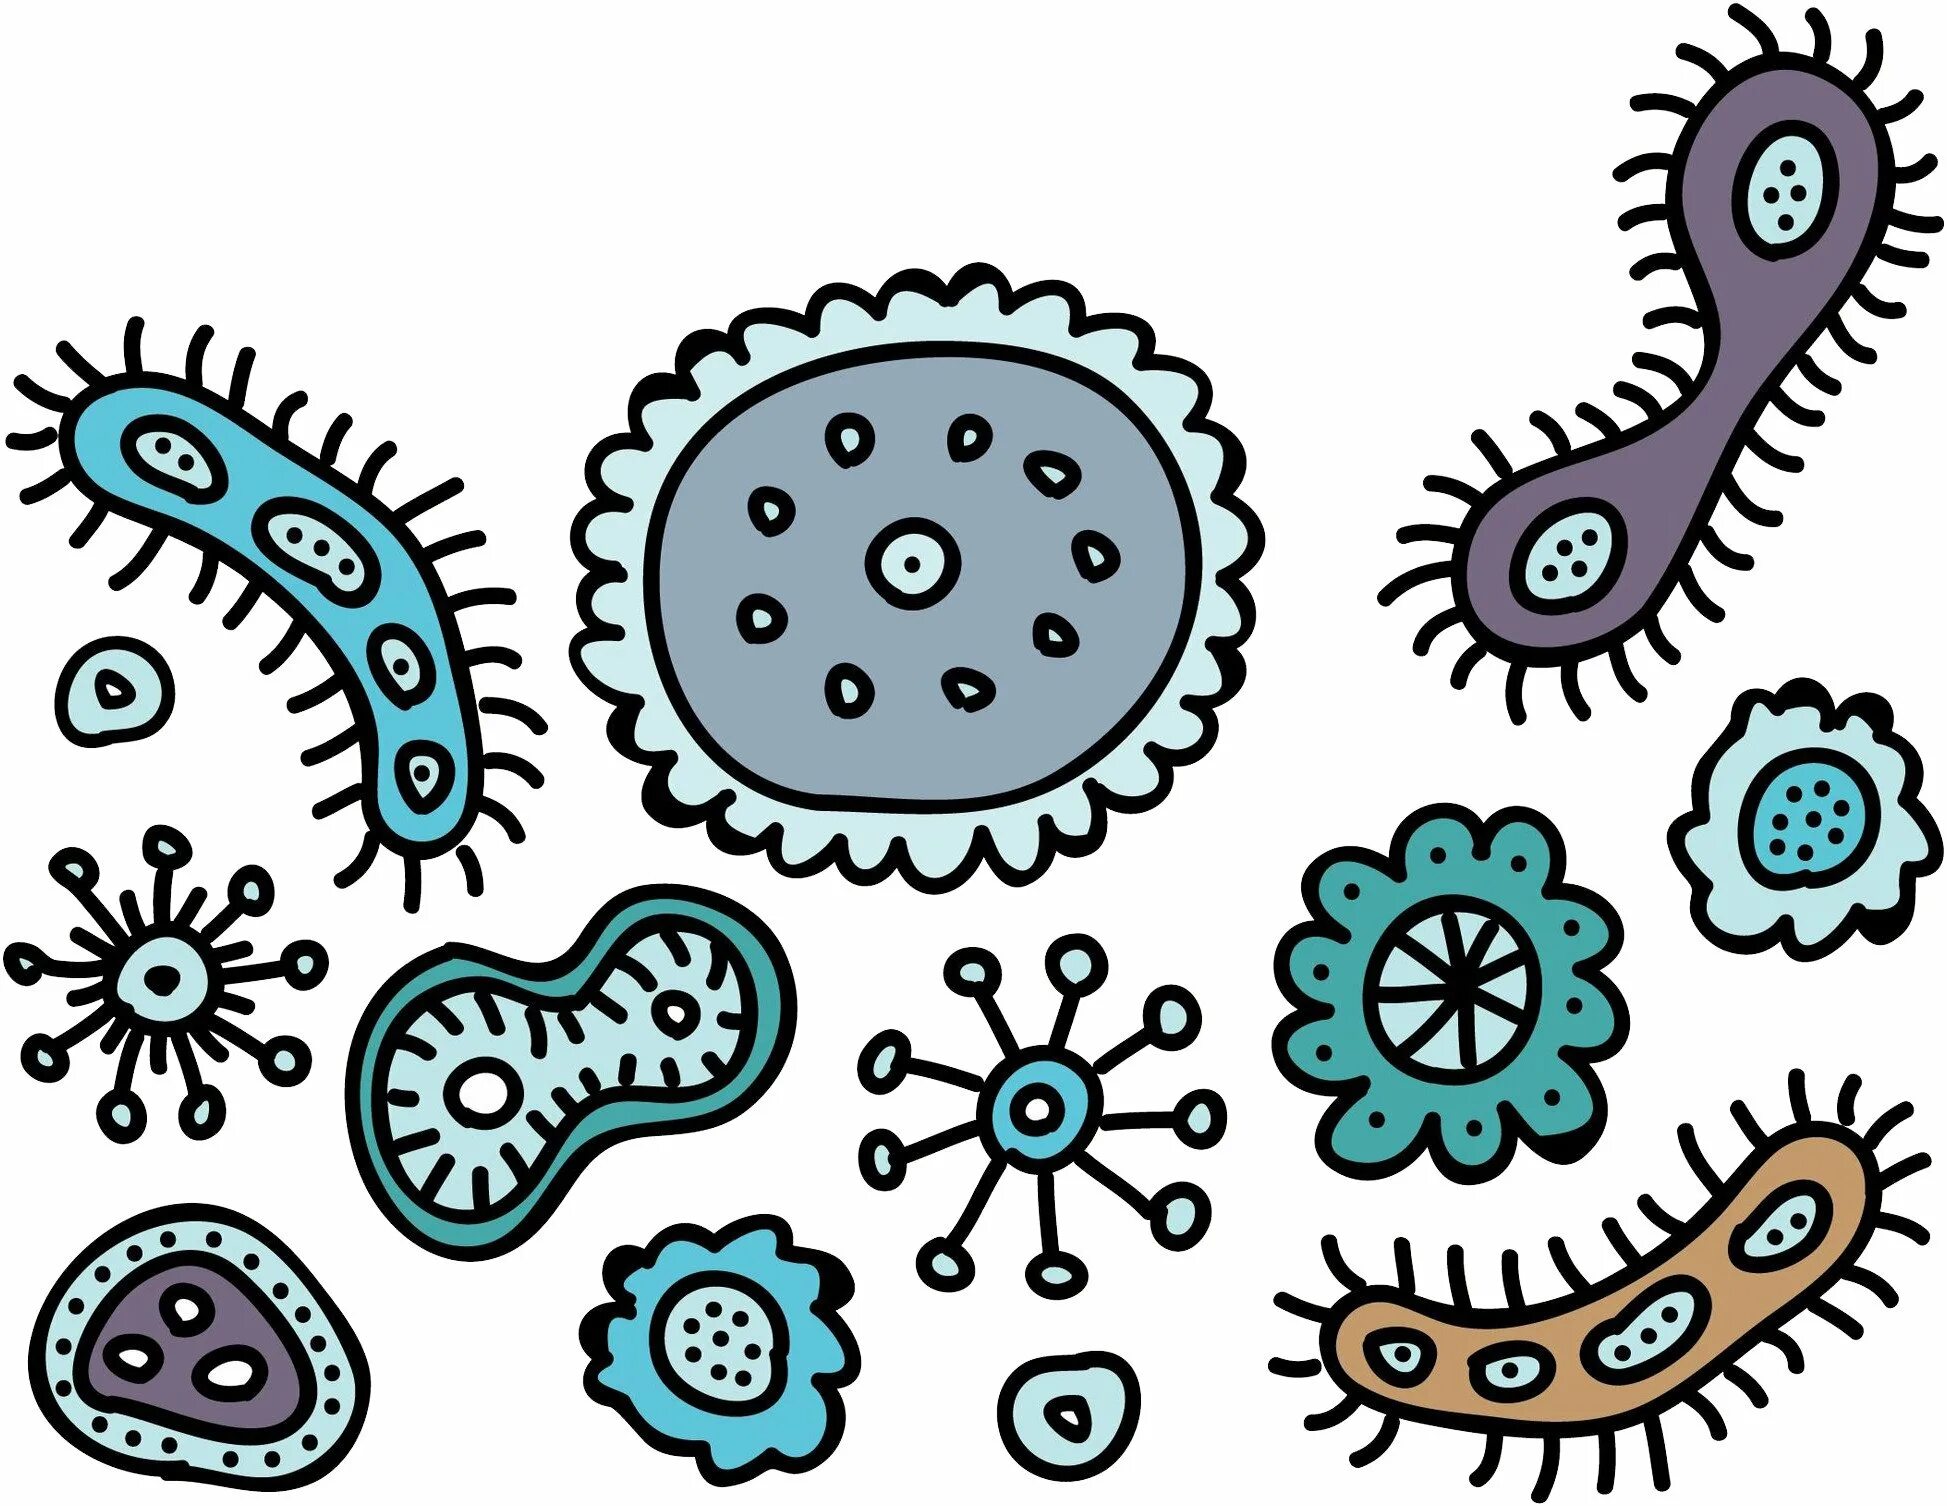 Бактерия 1 играть. Бактерии рисунок. Бактерии фон. Бактерии карандашом. Микробы картинки.